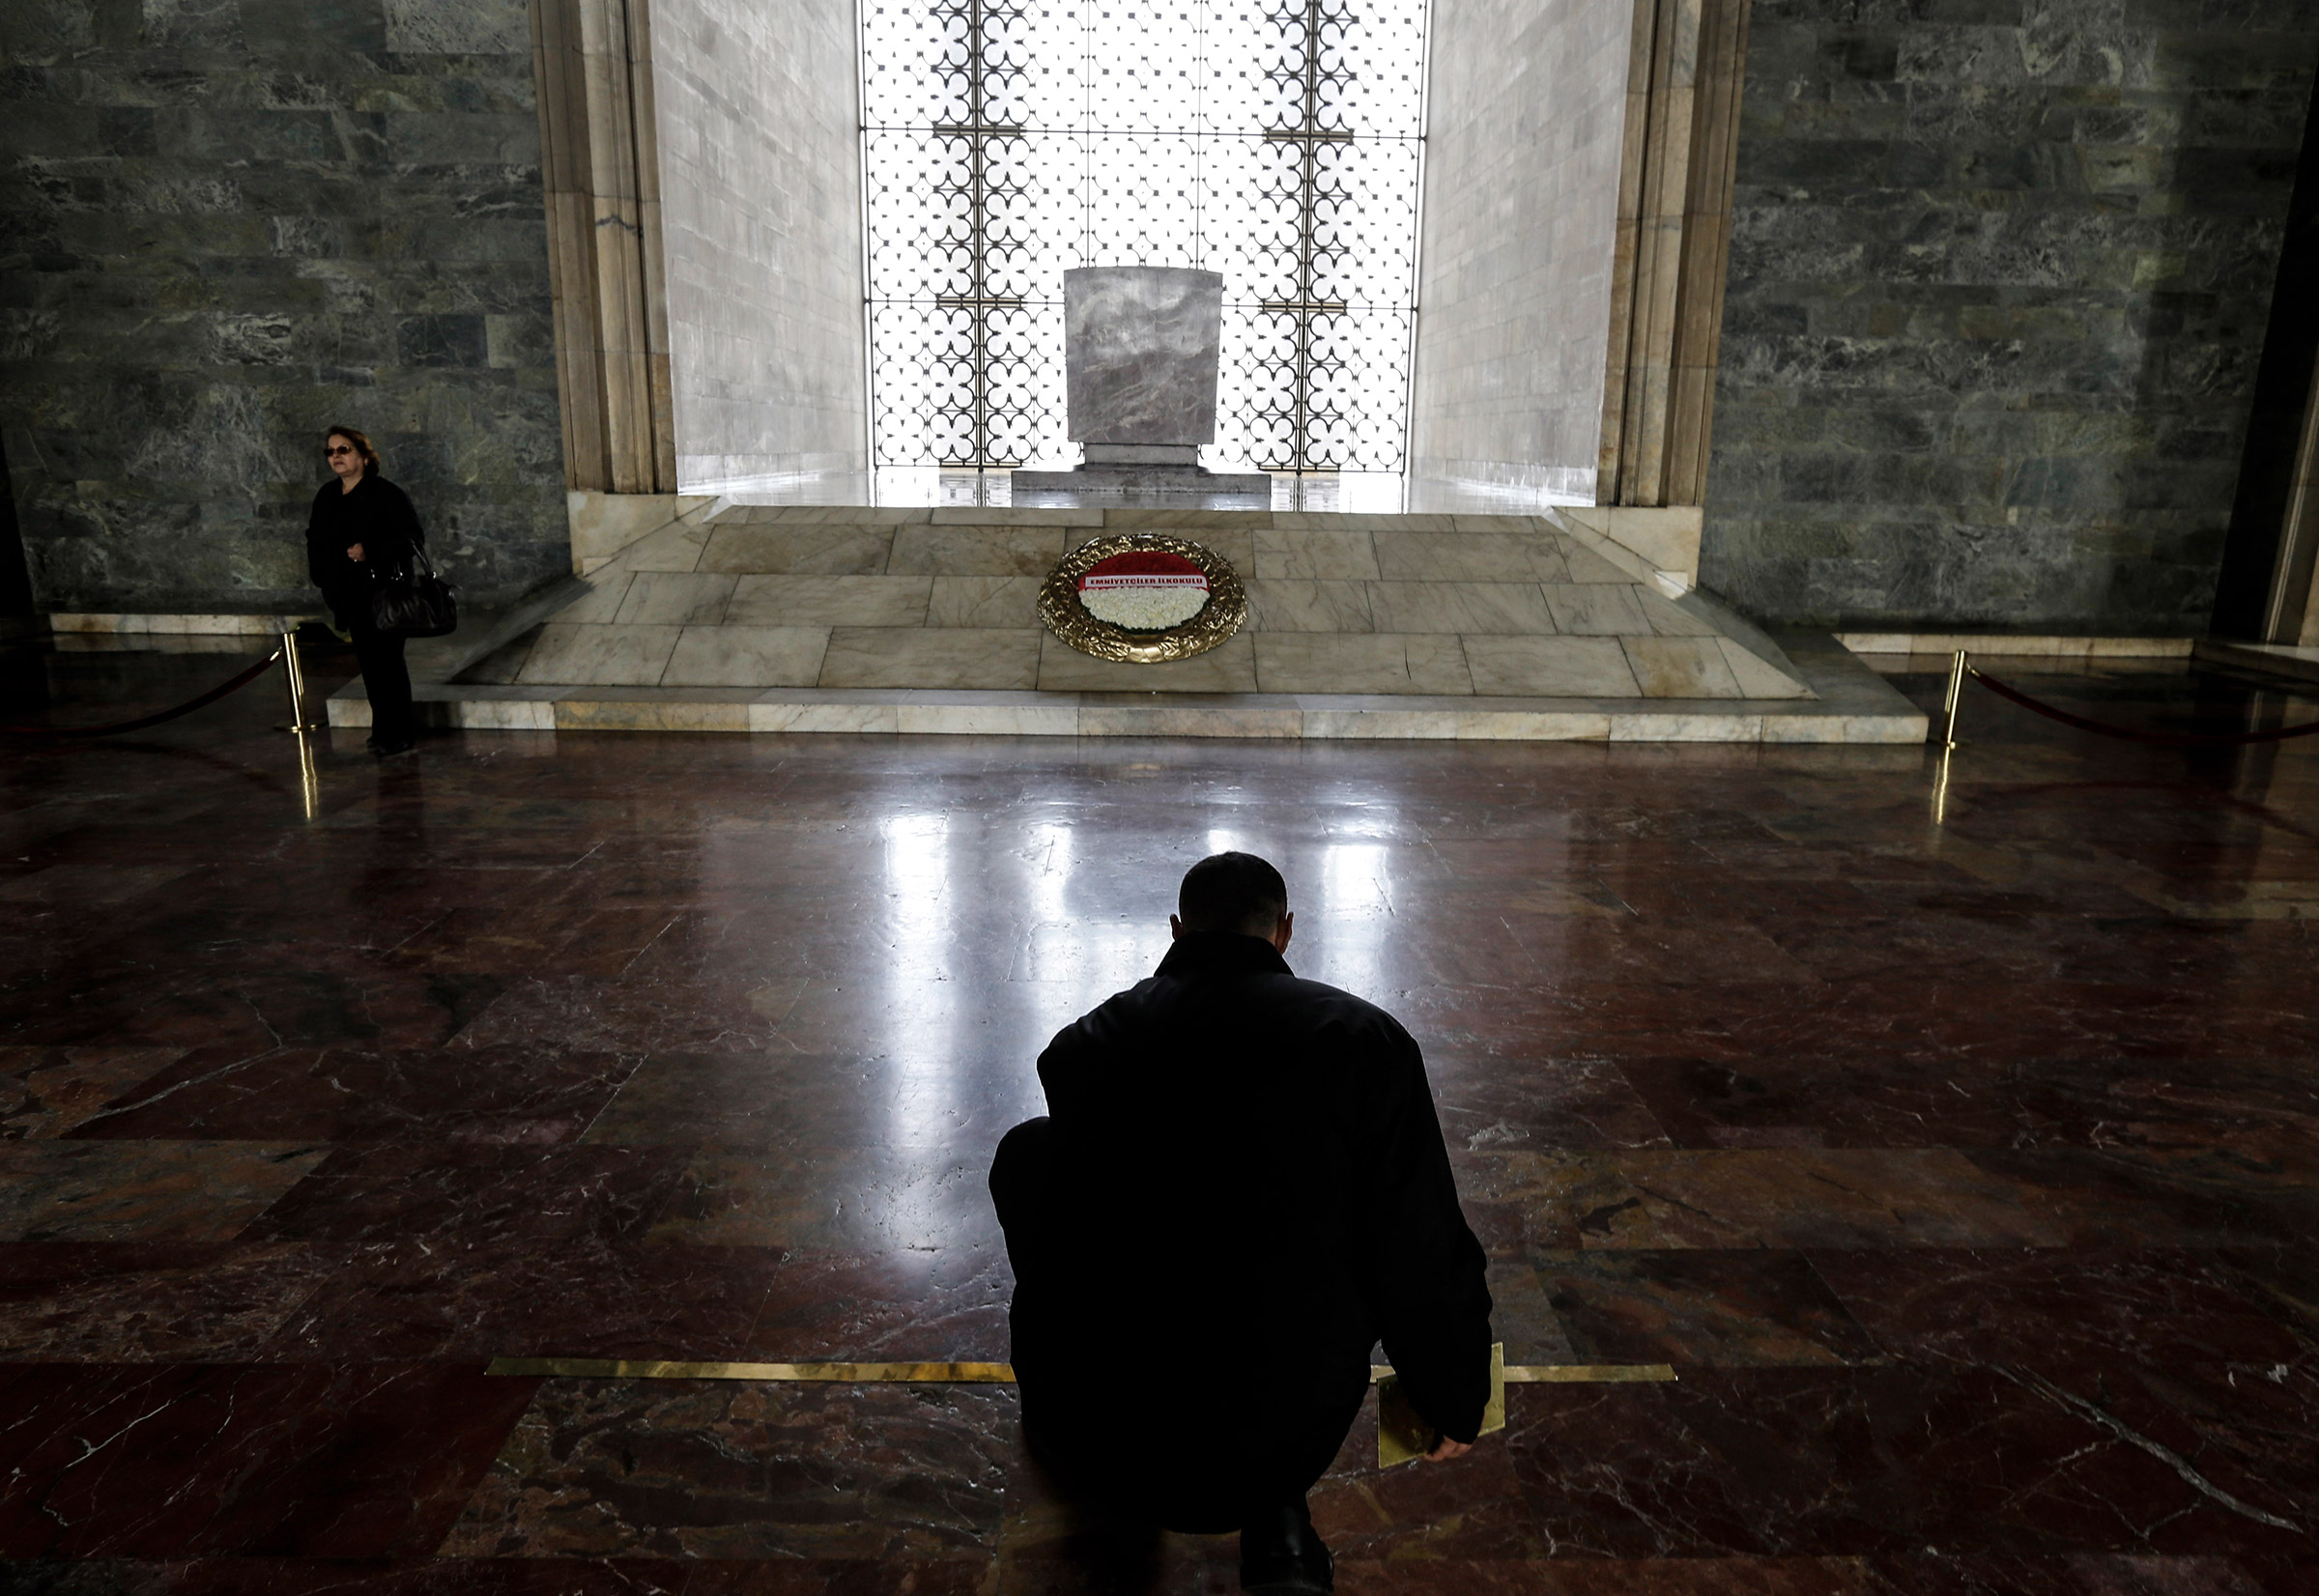 Ежегодно мавзолей становится центром торжеств в День памяти Ататюрка. В декабре 2014 года во время визита в Турцию цветы к могиле Ататюрка возложил президент России Владимир Путин.